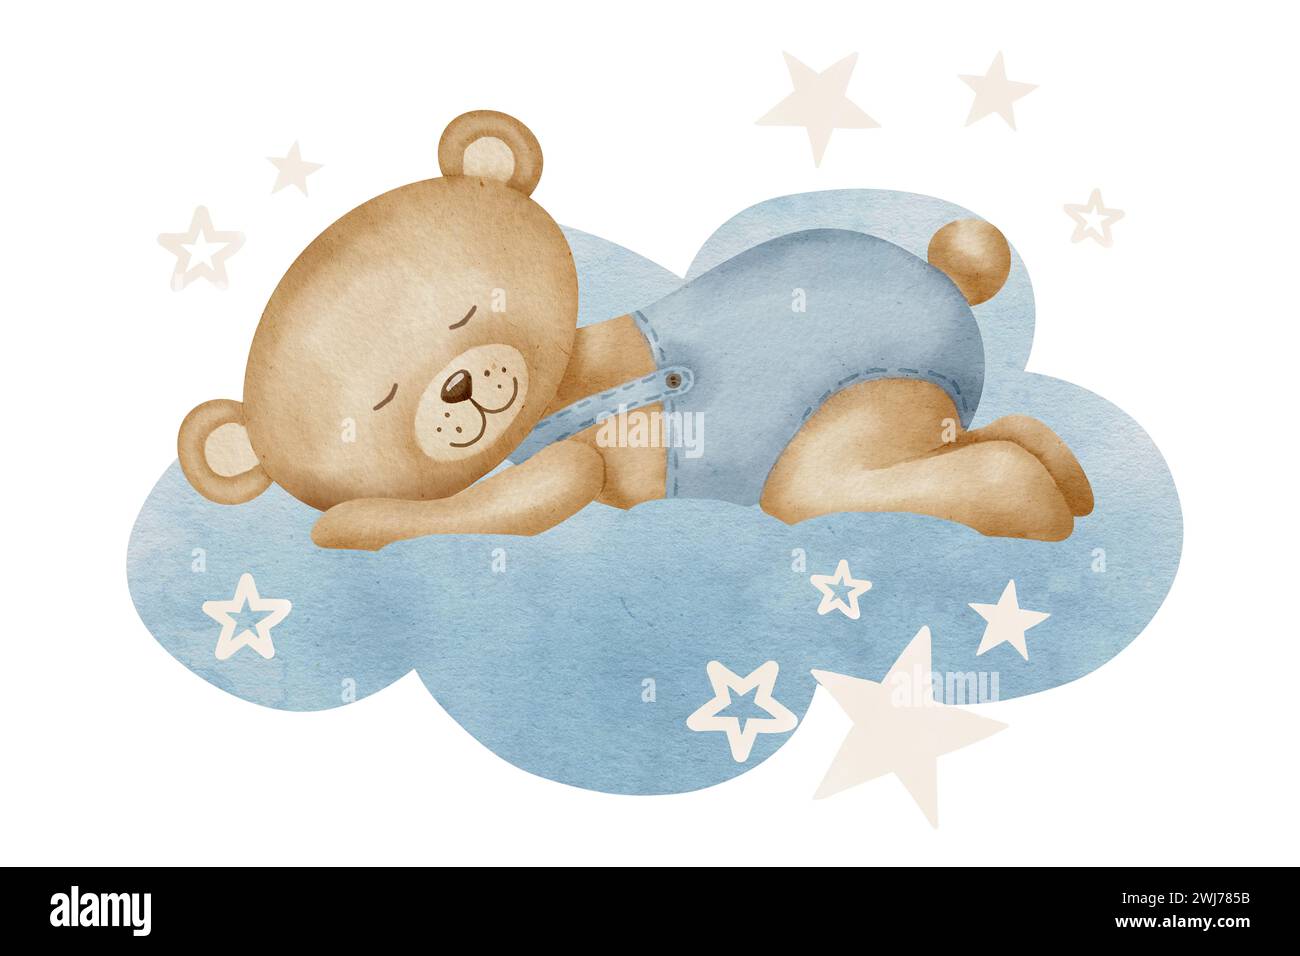 Mignon petit ours en peluche dormant sur un nuage avec des étoiles. Illustration d'aquarelle dessinée à la main de jouet animal pour les cartes de voeux ou invitations de douche de bébé. Dessin enfantin pour la conception de pépinière ou les enfants. Banque D'Images